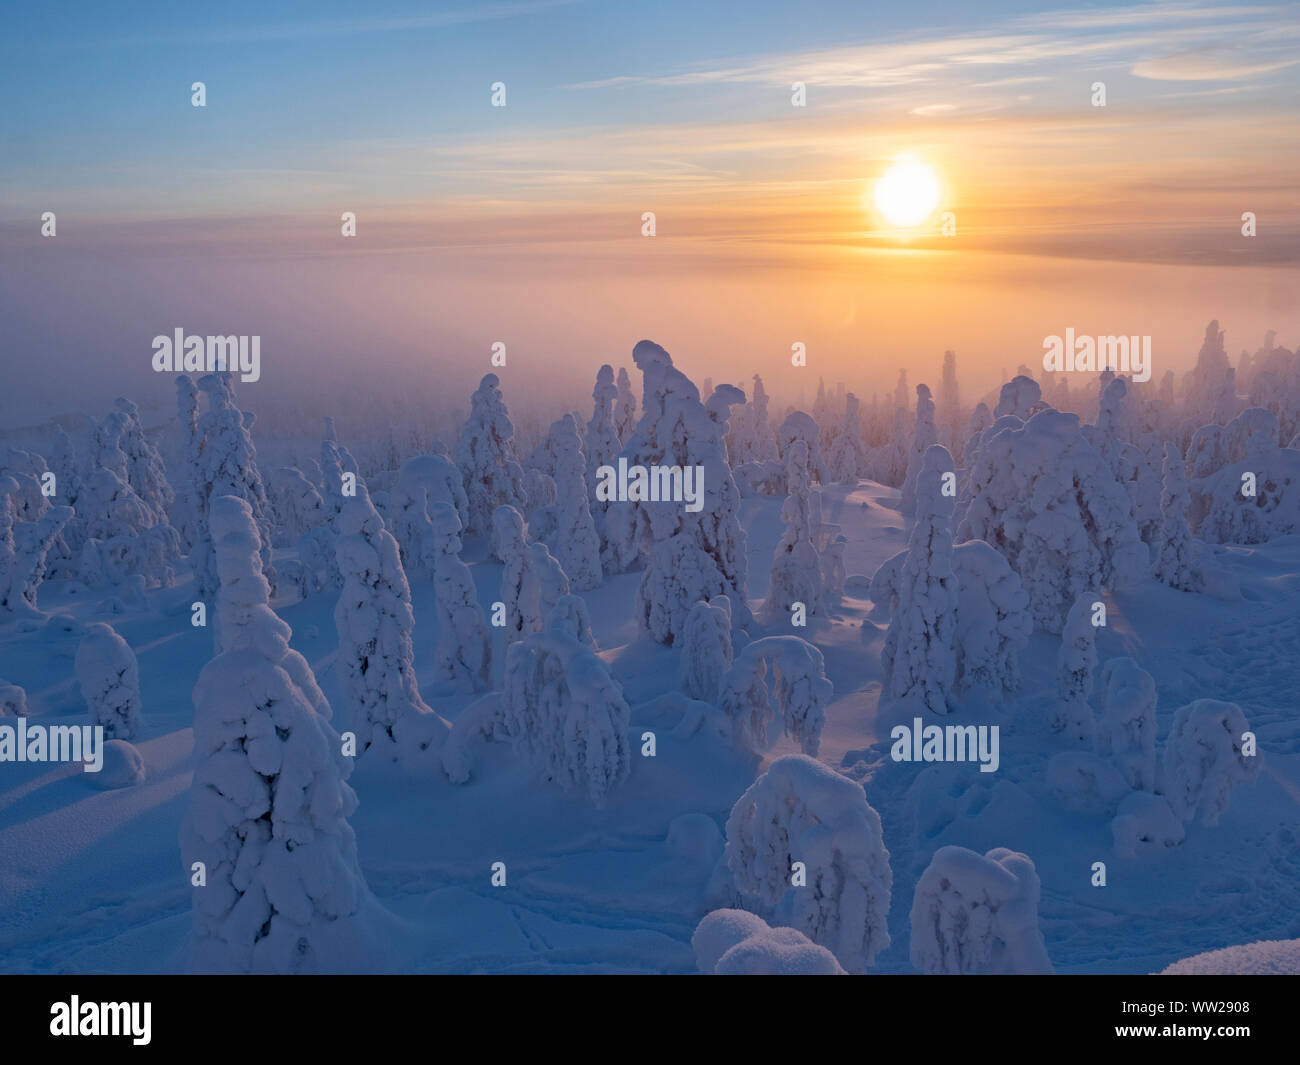 Les épinettes enveloppé dans la neige pointe Ruka Kuusamo Finlande Janvier. Lorsque la neige manteaux sapins comme celle-ci, il est connu comme la neige et la couronne peut mettre une charge Banque D'Images